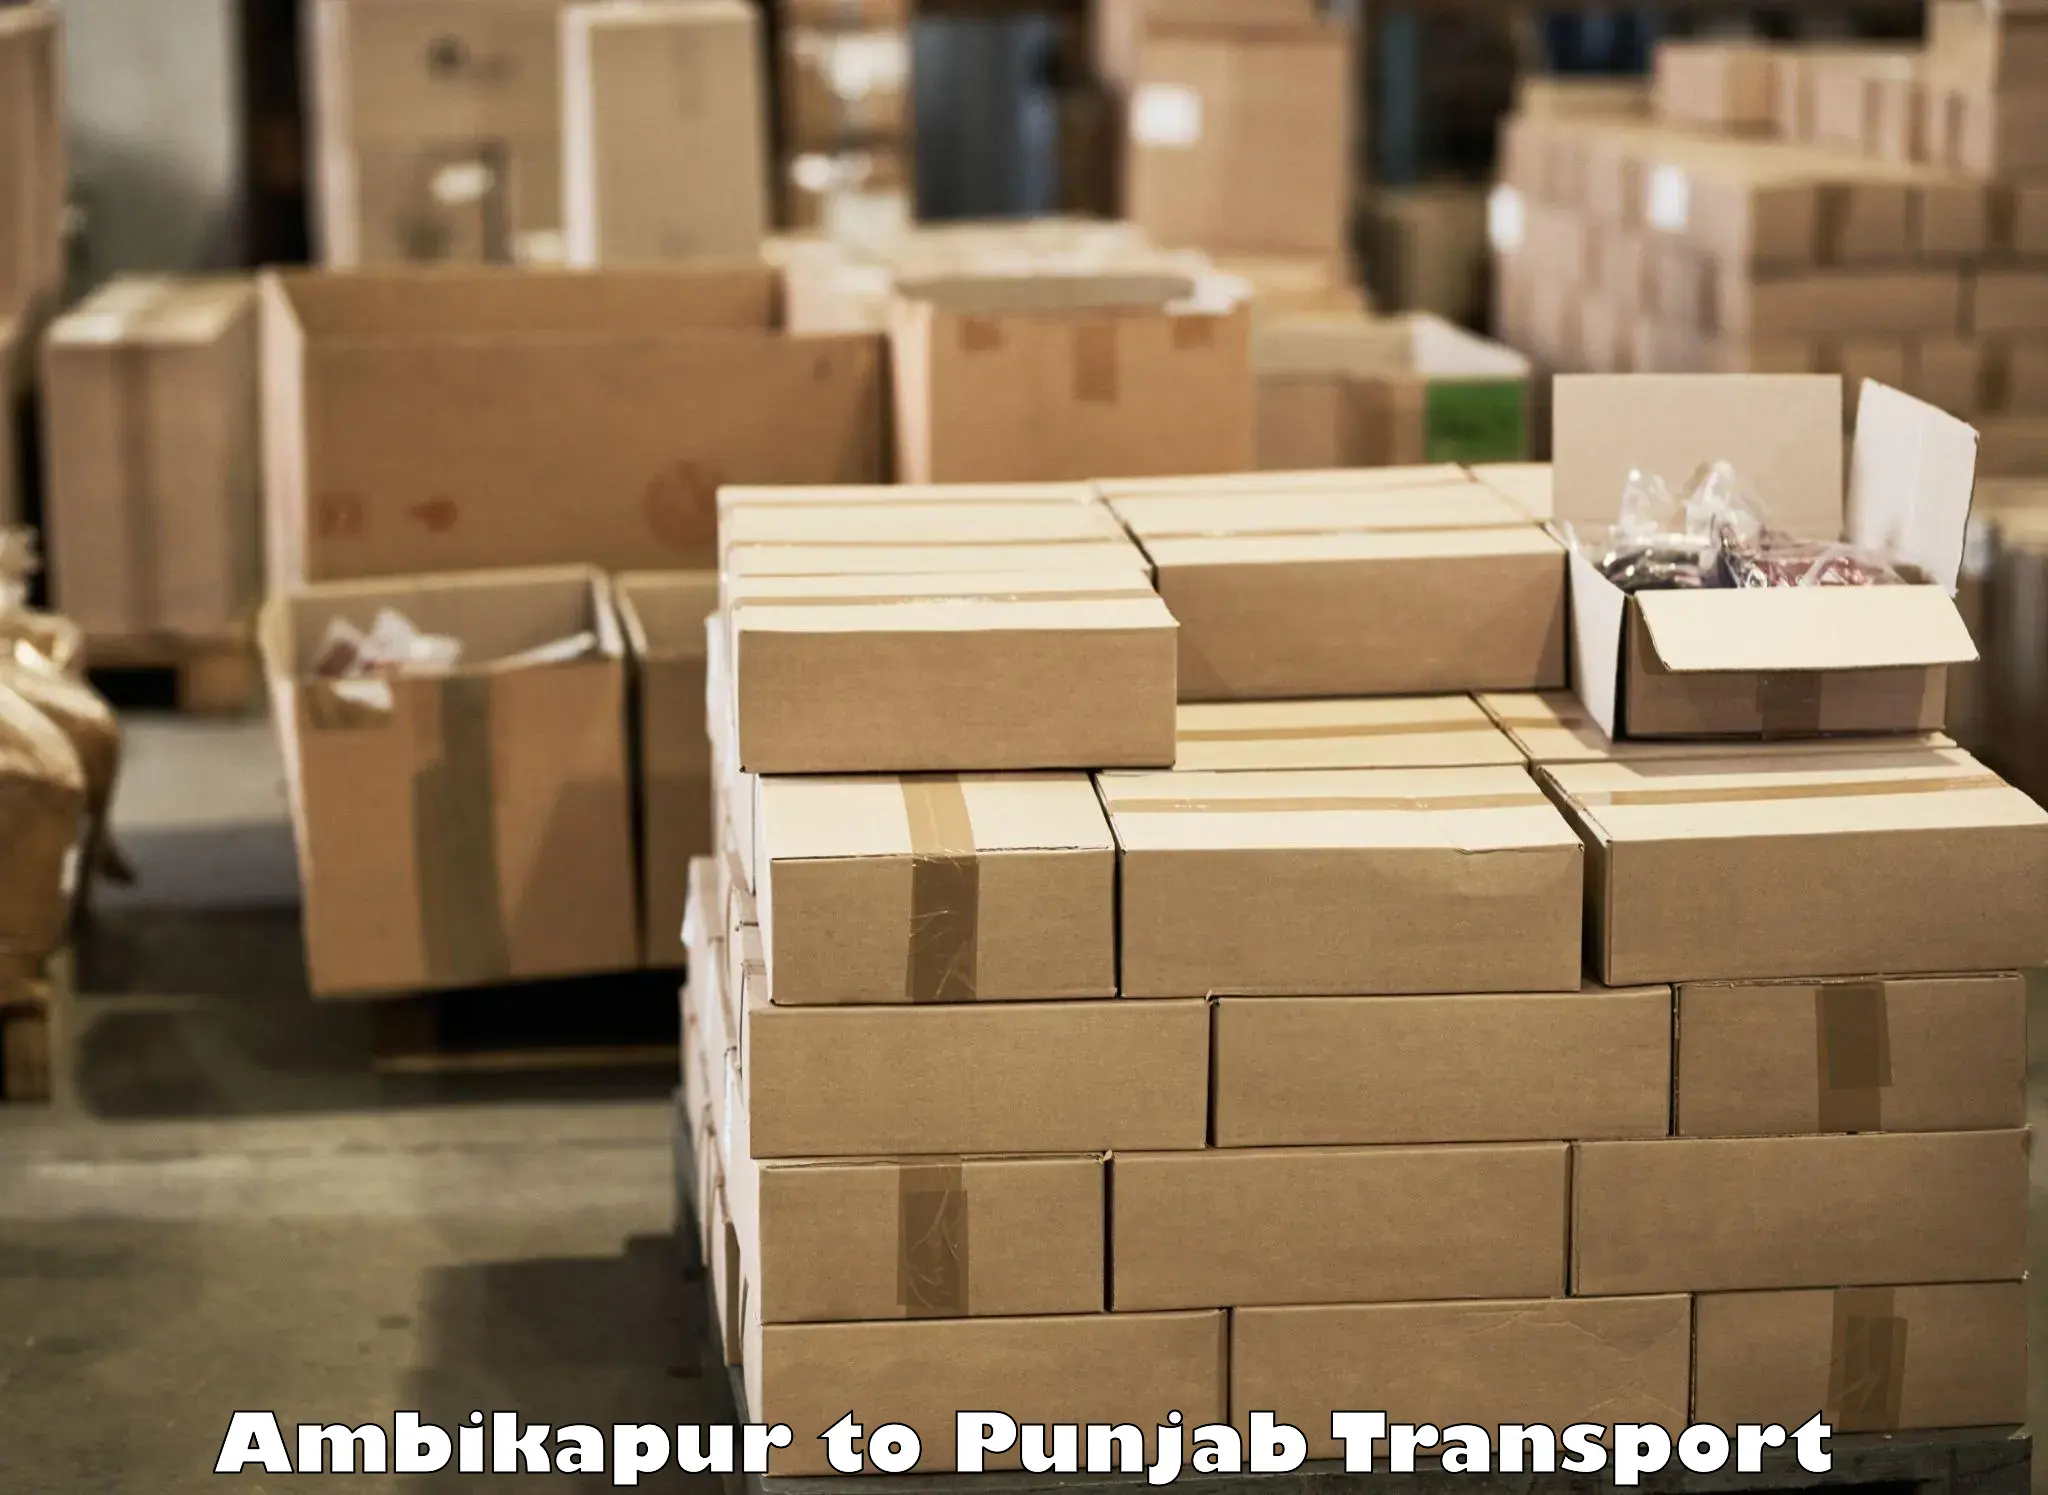 Furniture transport service Ambikapur to Punjab